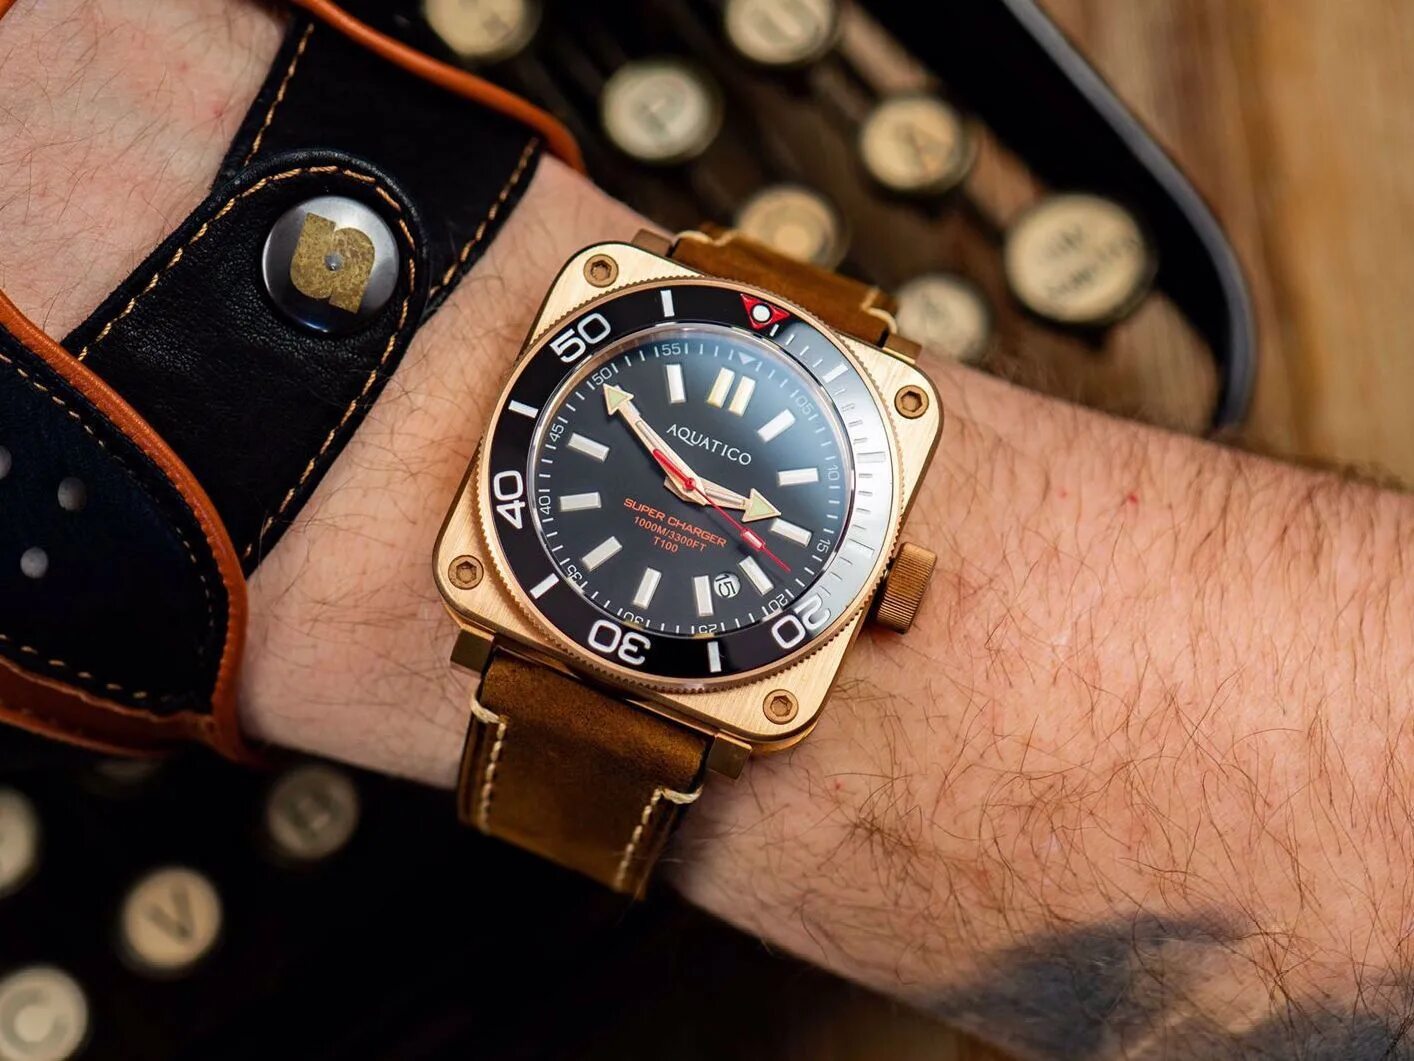 Watch discover. Часы Aquatico. Aquatico Ocean Star часы. Aquatico Diver watch. Часы Supercharger.